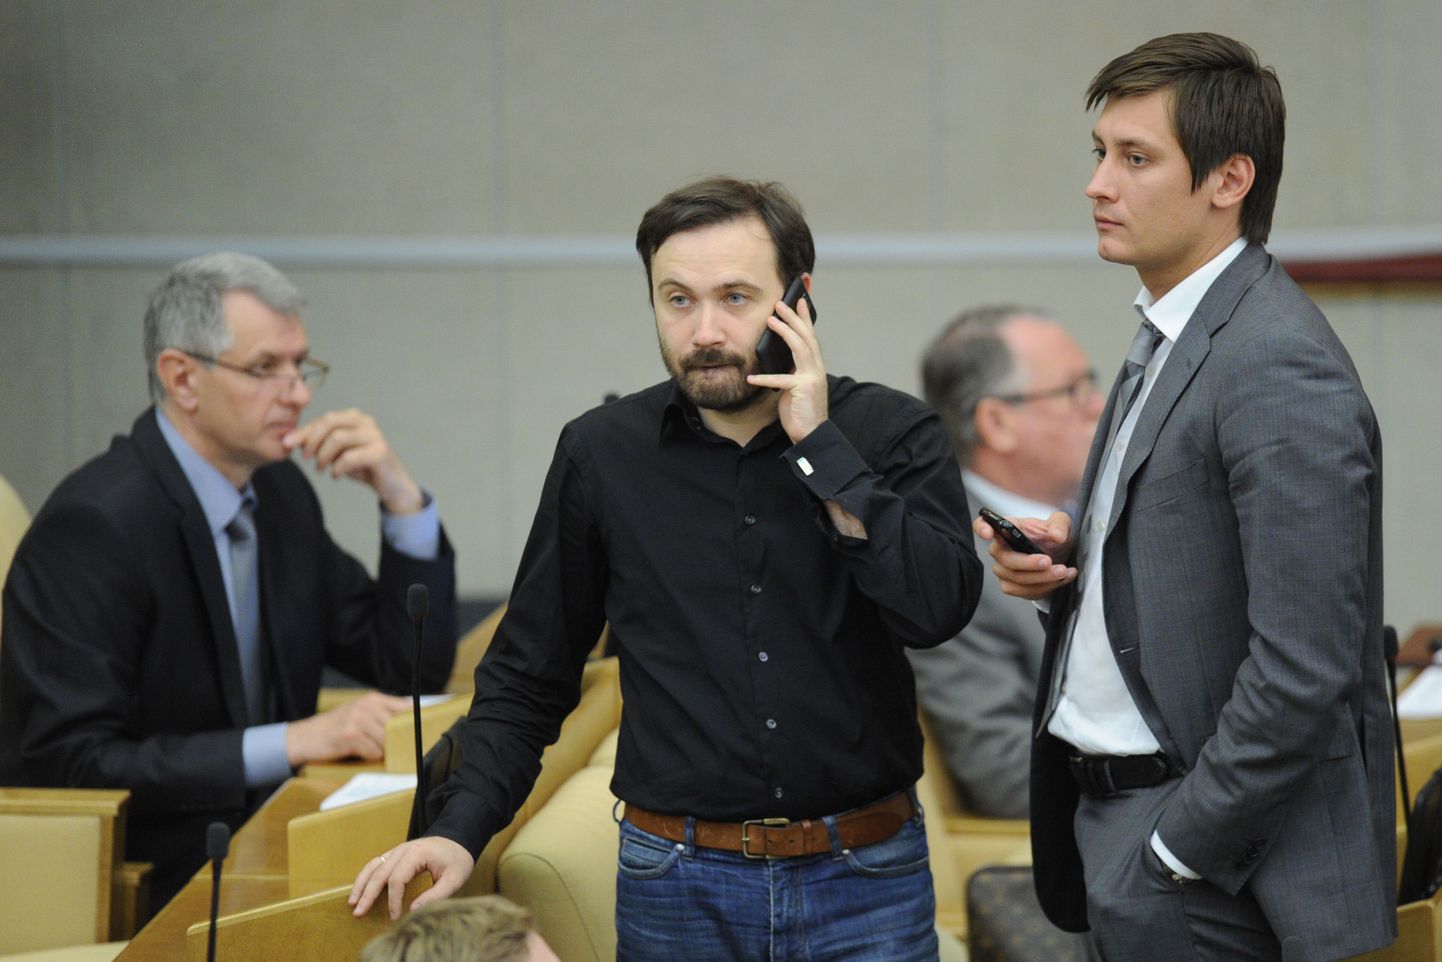 Vene riigiduuma liikmed Ilja Ponomarjov (ees vasakul) ja Dmitri Gudkov.